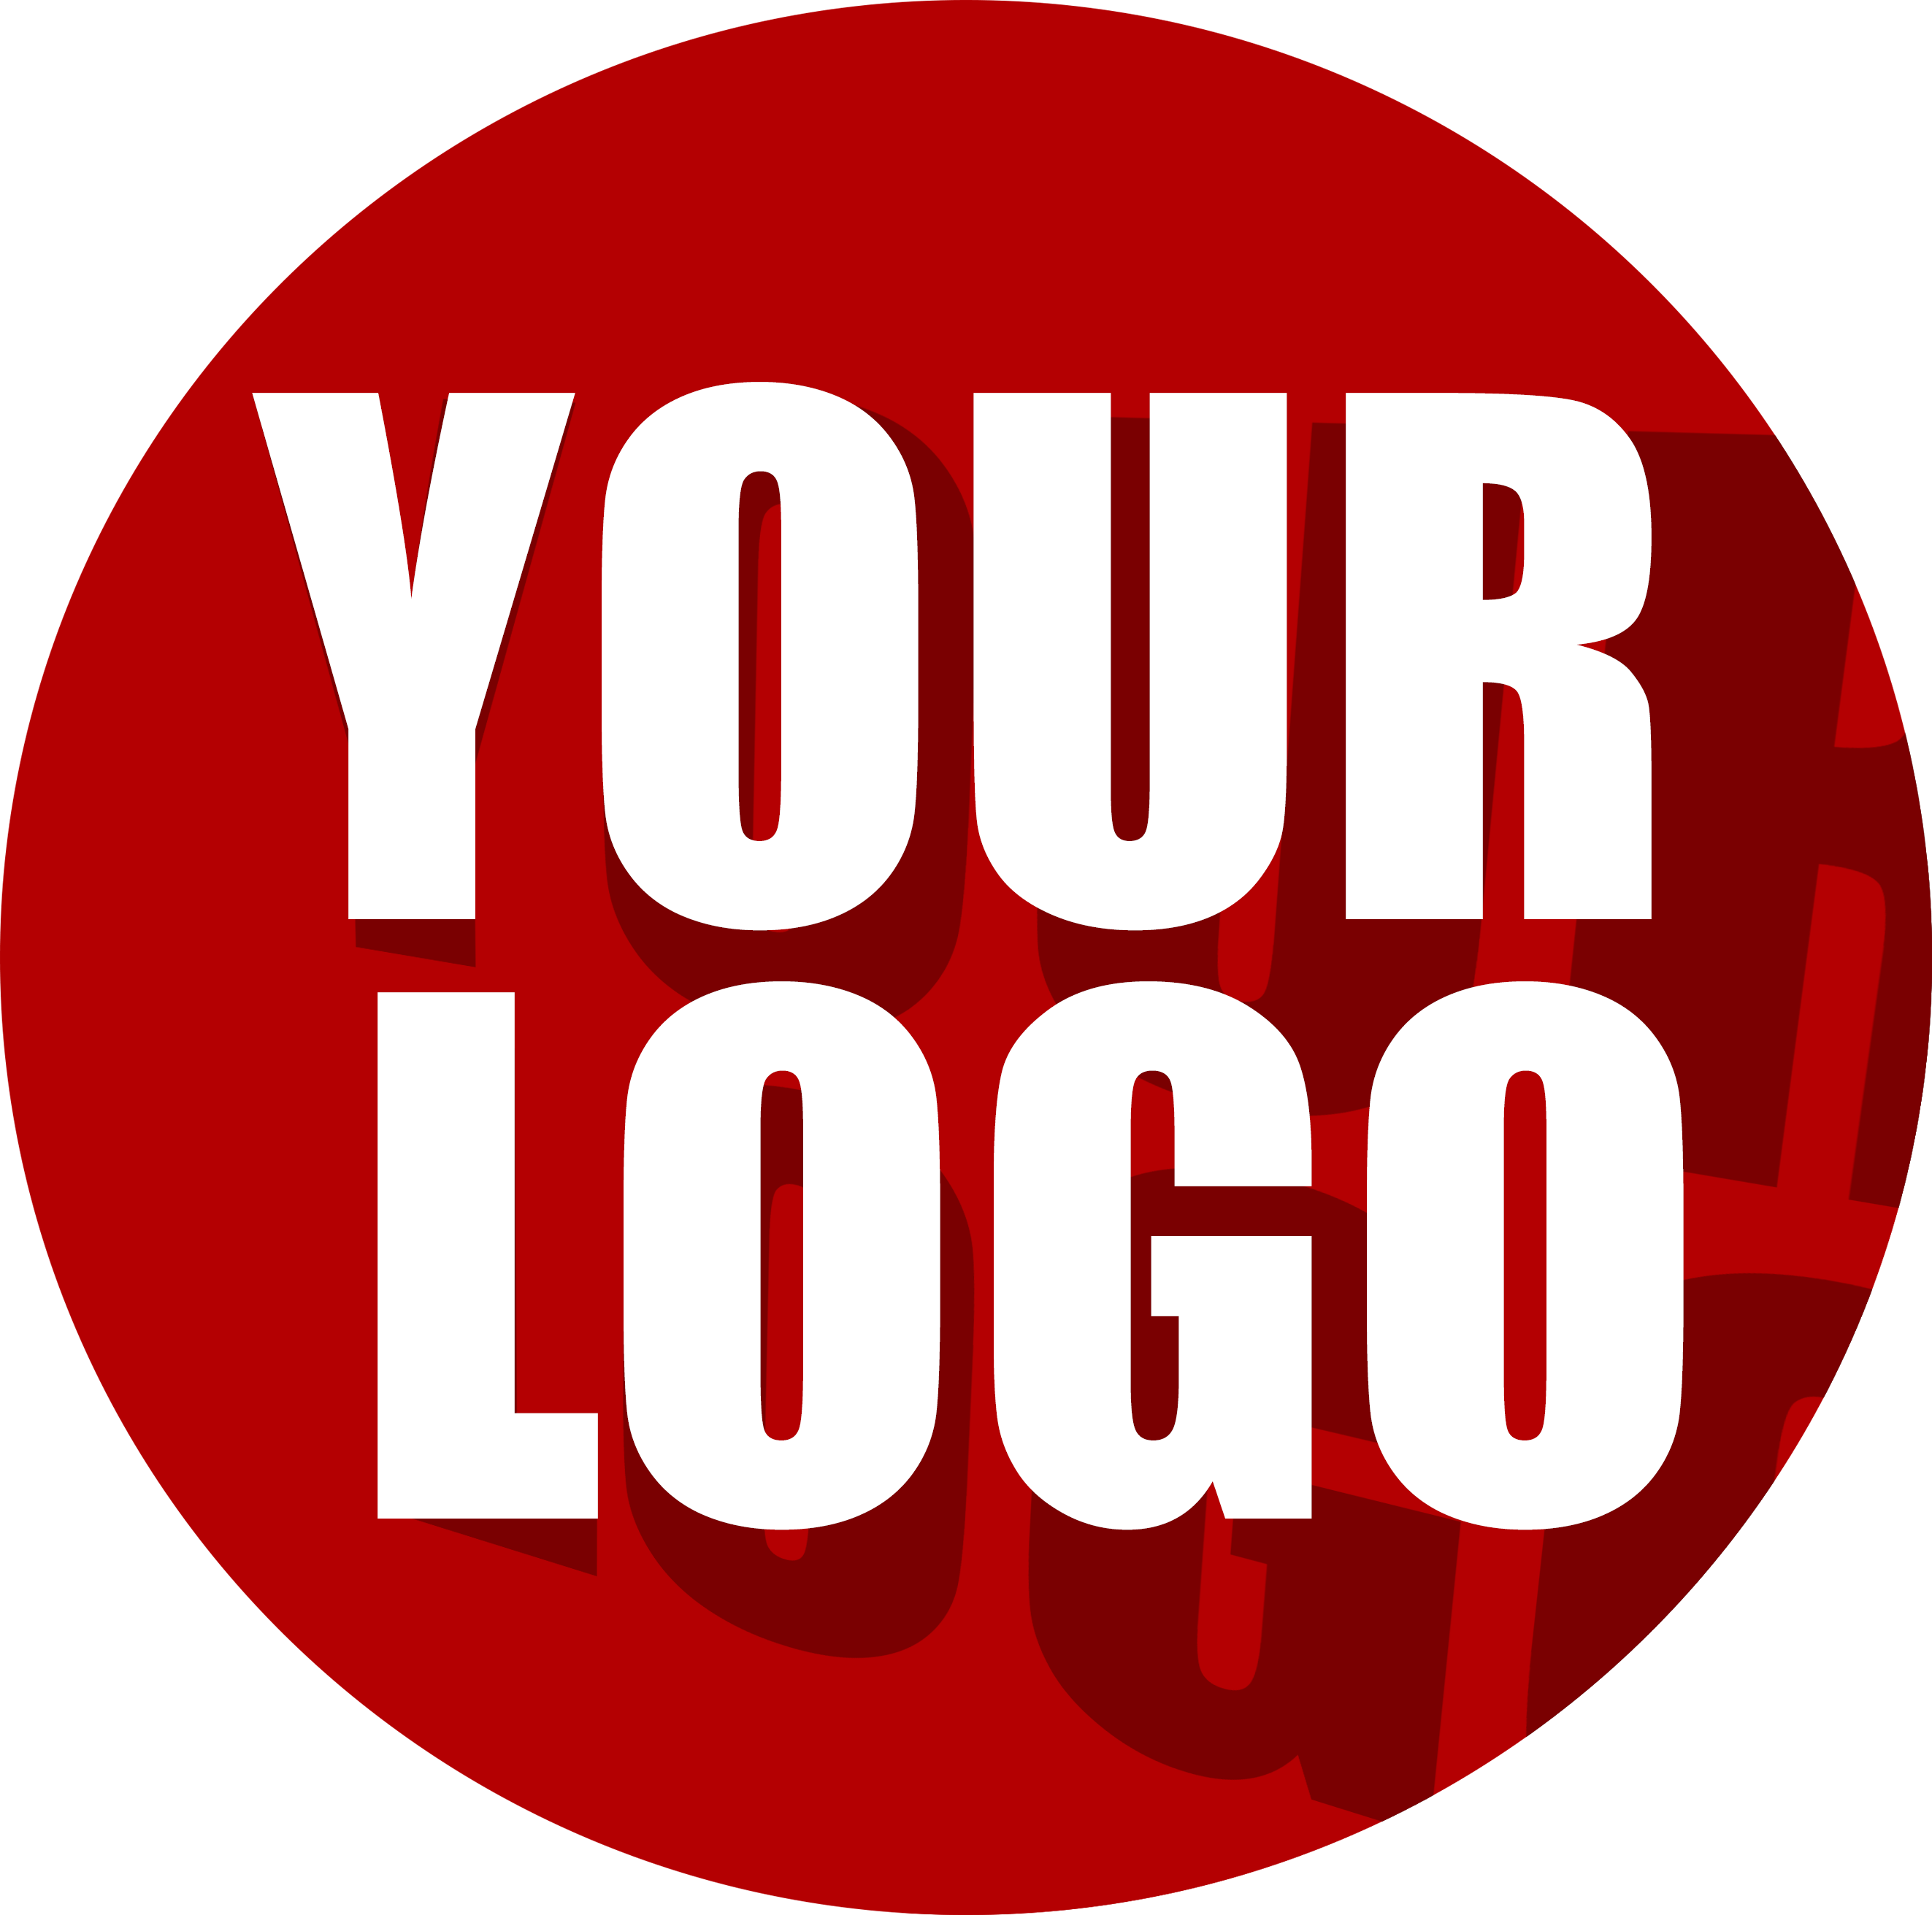 Your Logo - Ynaps Design Company in Delhi. Graphic Design services Delhi